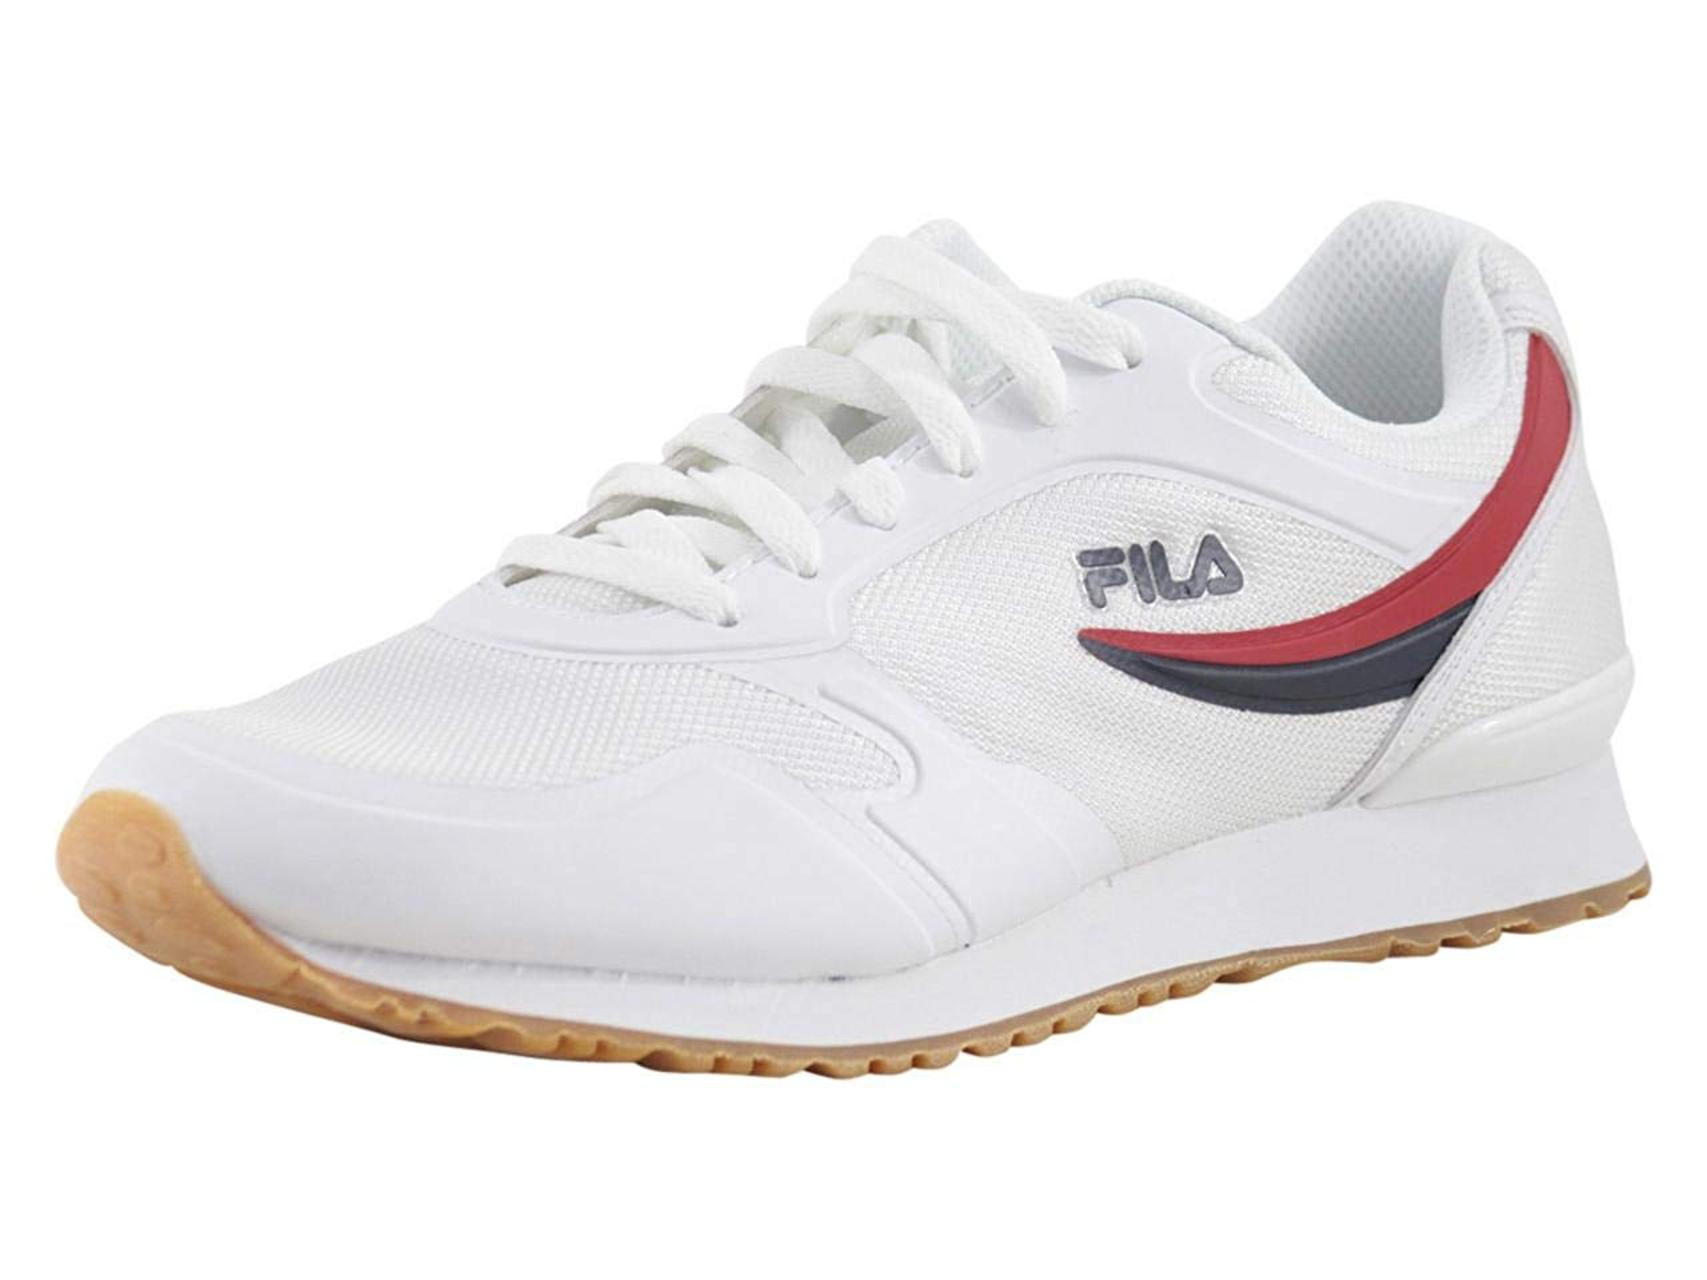 fila white sneakers for men